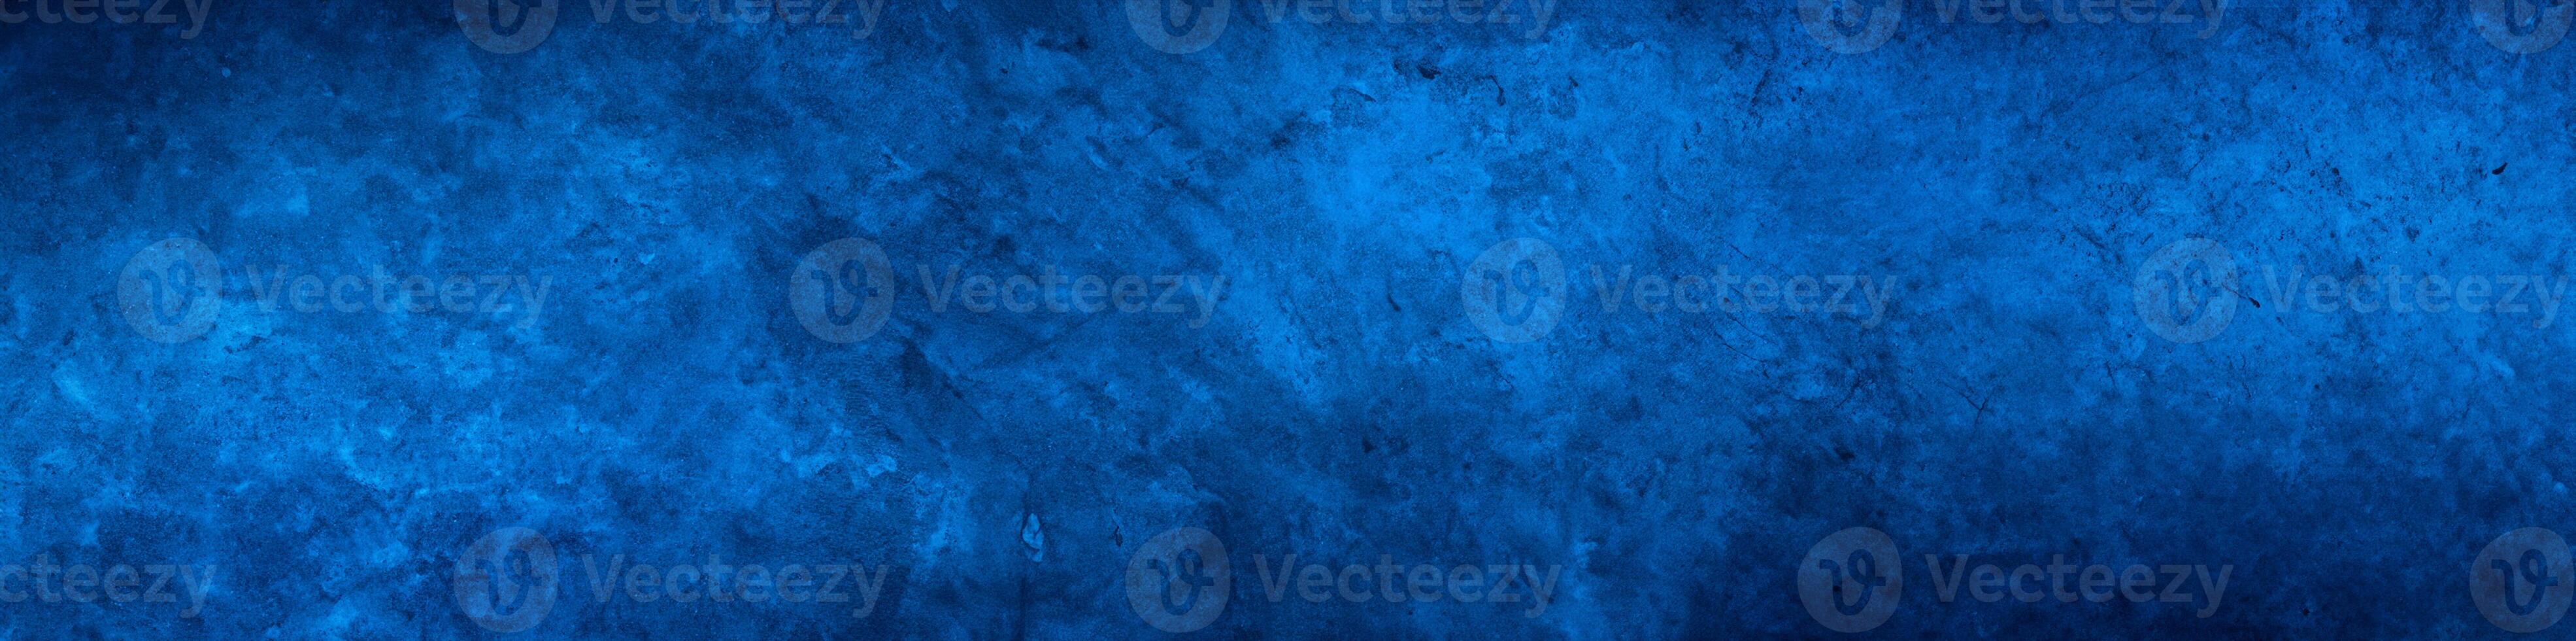 iluminador azul, abstrato fundo textura para bandeira ou poster. foto